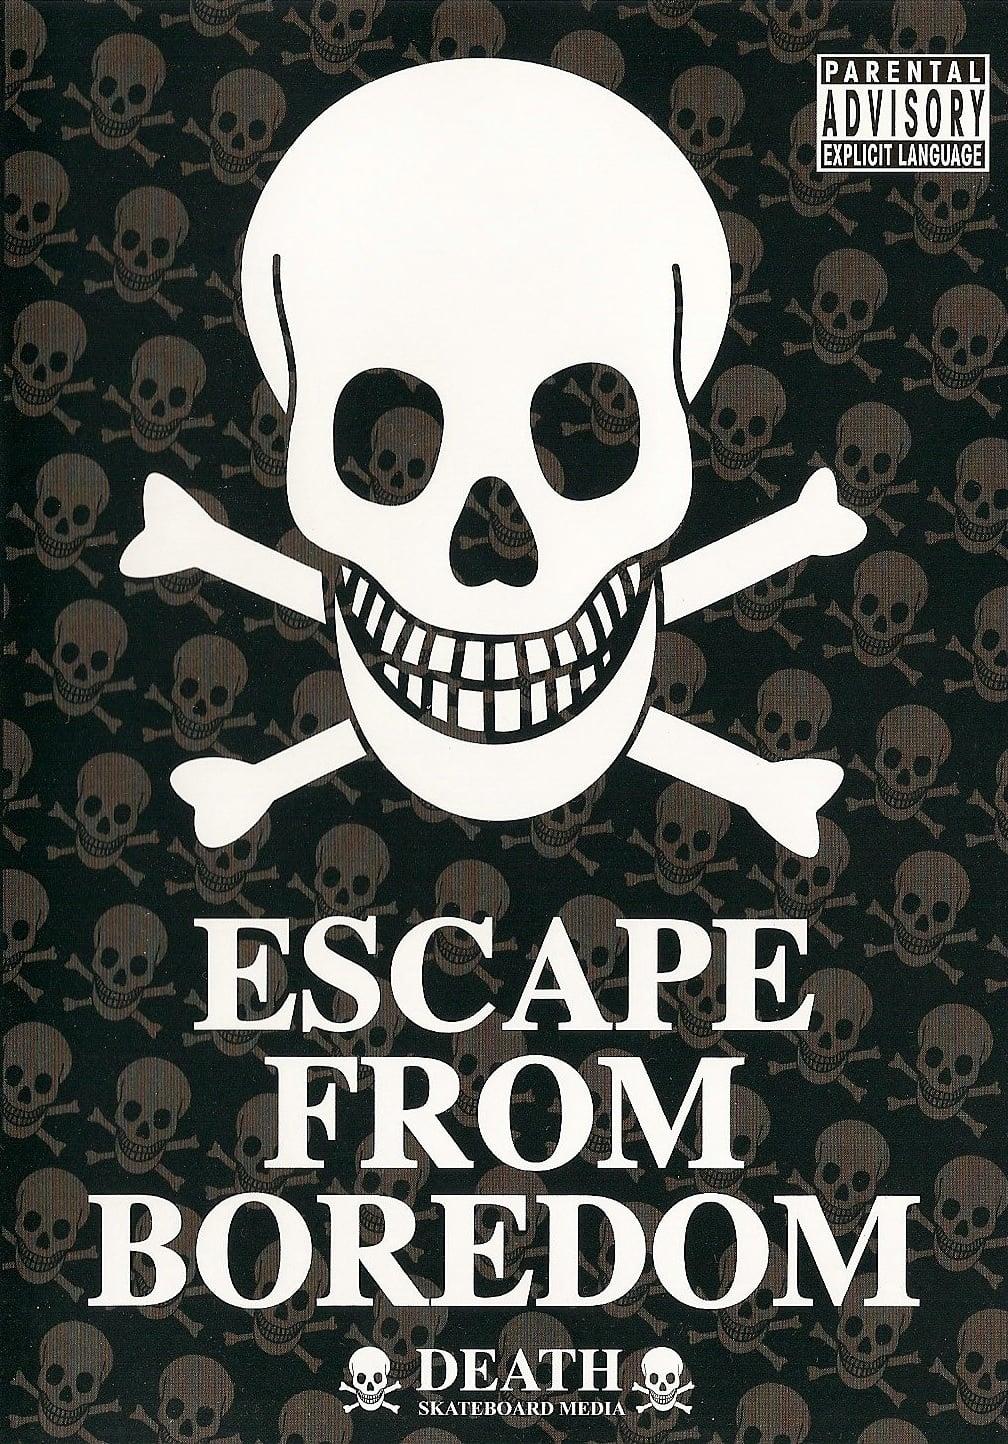 Escape from Boredom poster